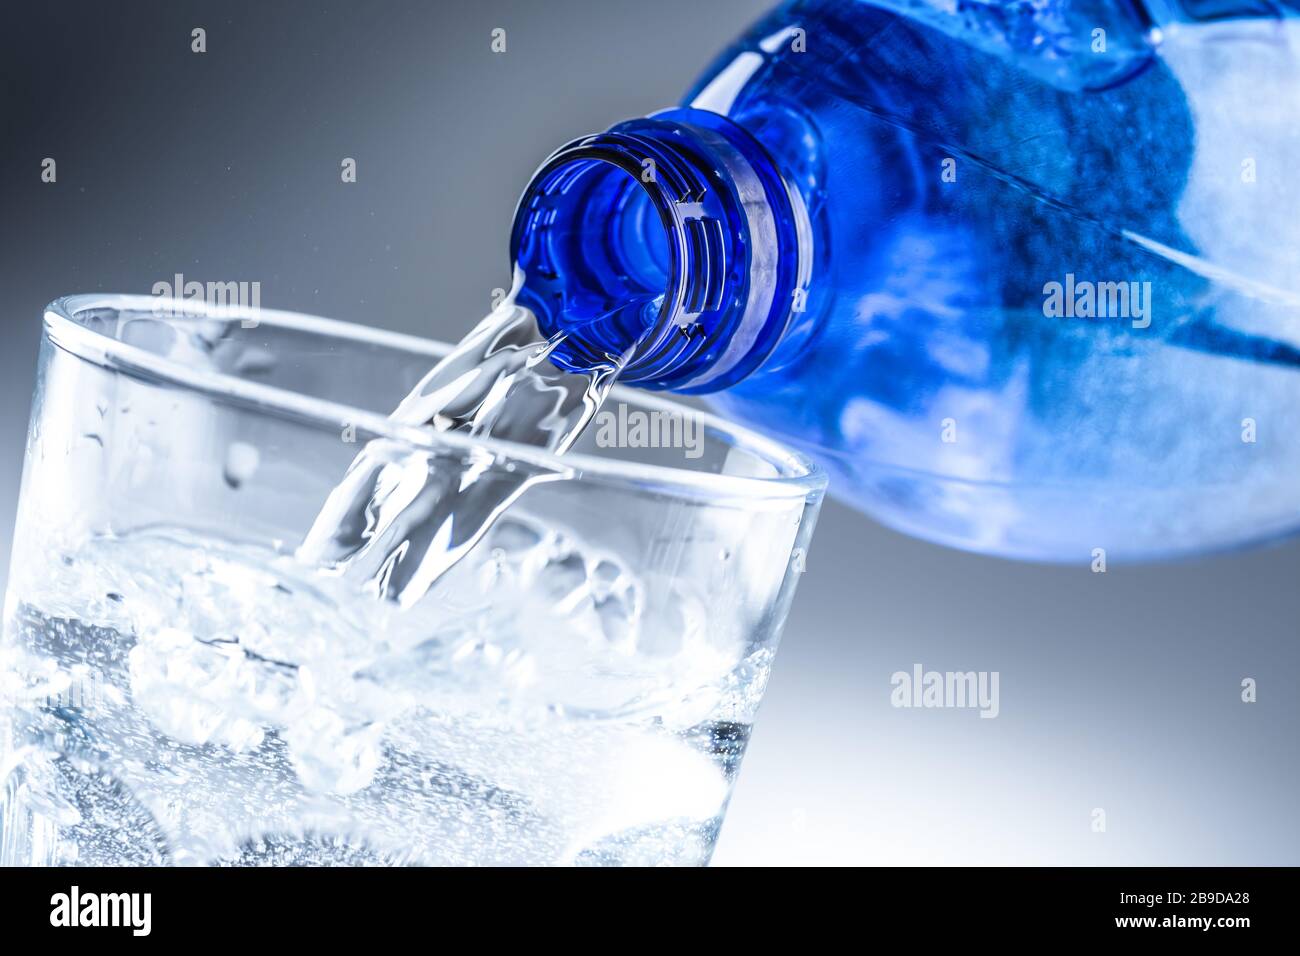 Verter agua mineral de una botella azul en vidrio transparente sobre fondo gris abstracto Foto de stock